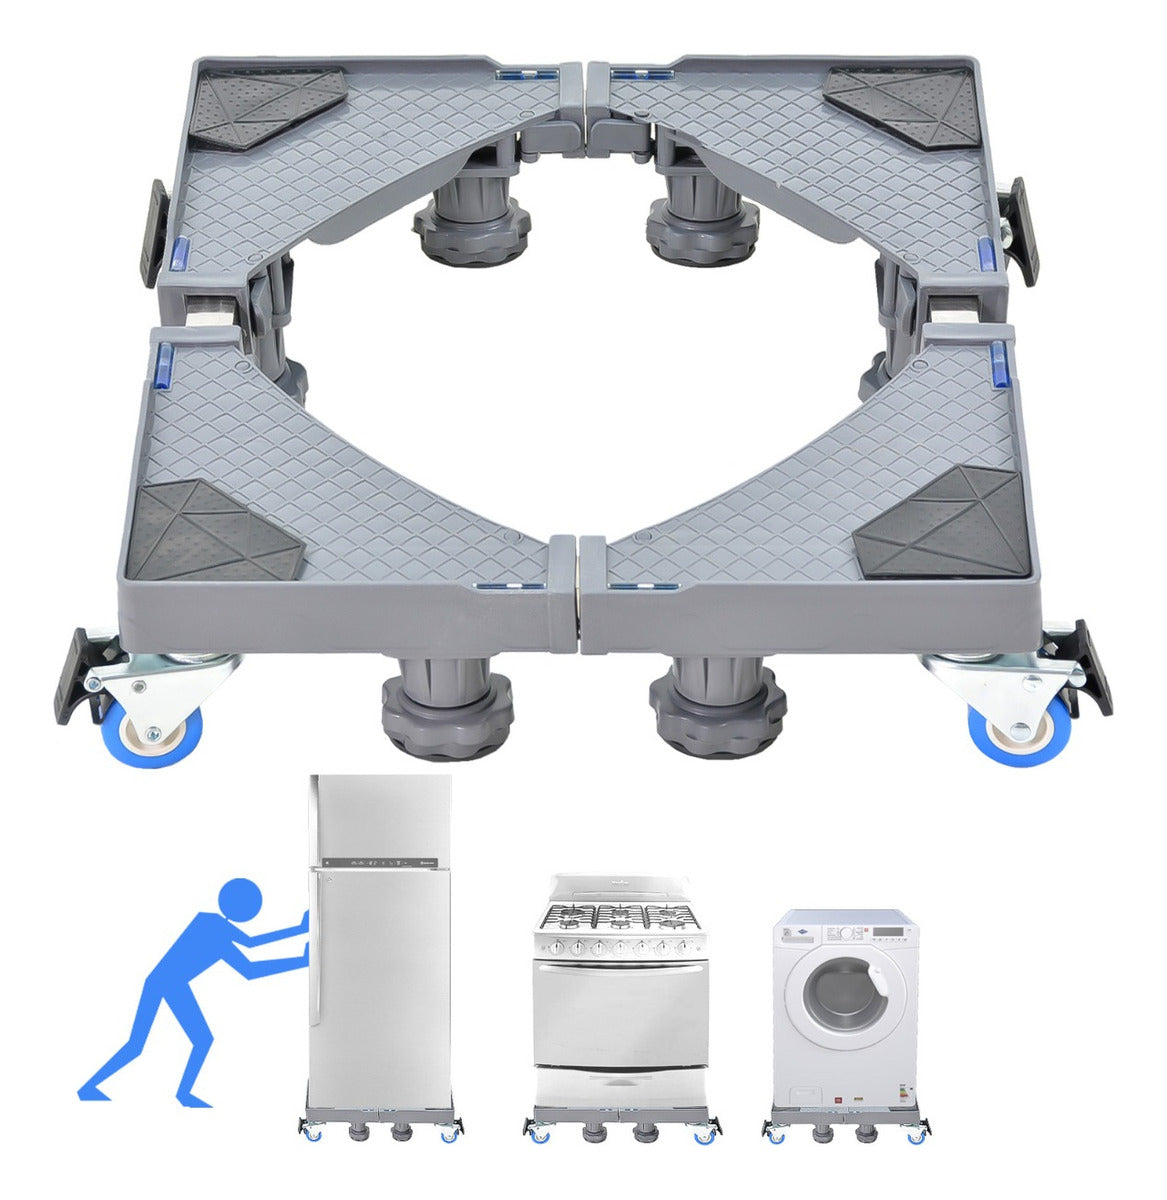 Base soporte multifuncional con ruedas para electrodomésticos